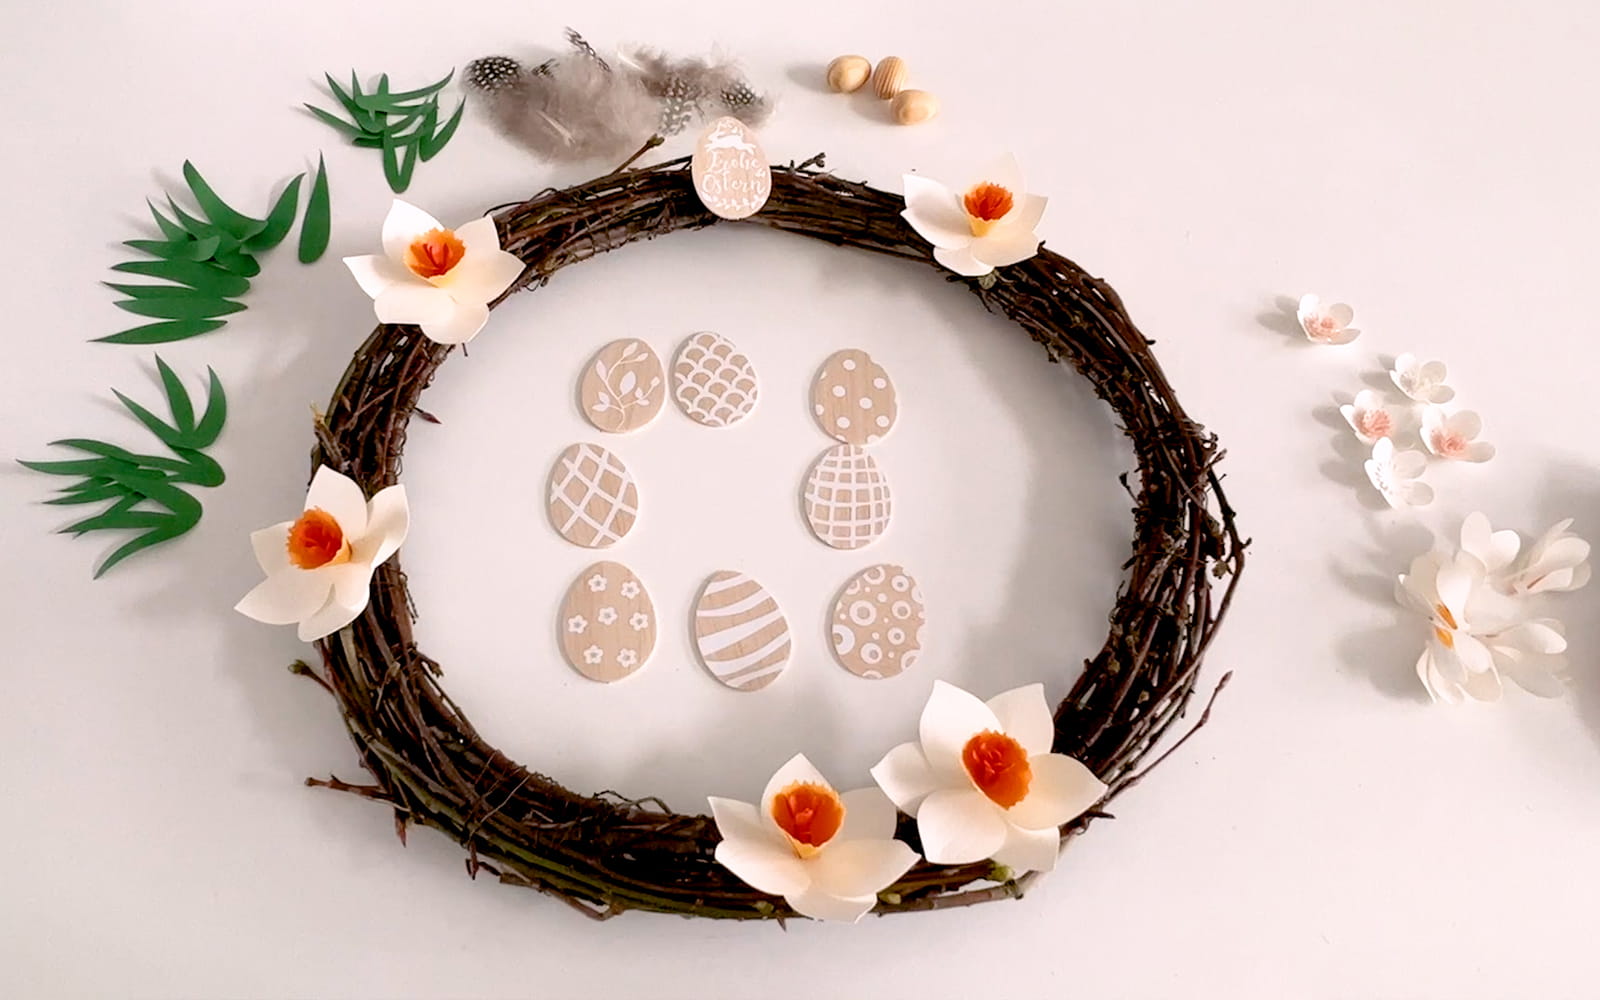 couronne en bois entourée de fleurs en papercraft et d'œufs en balsa